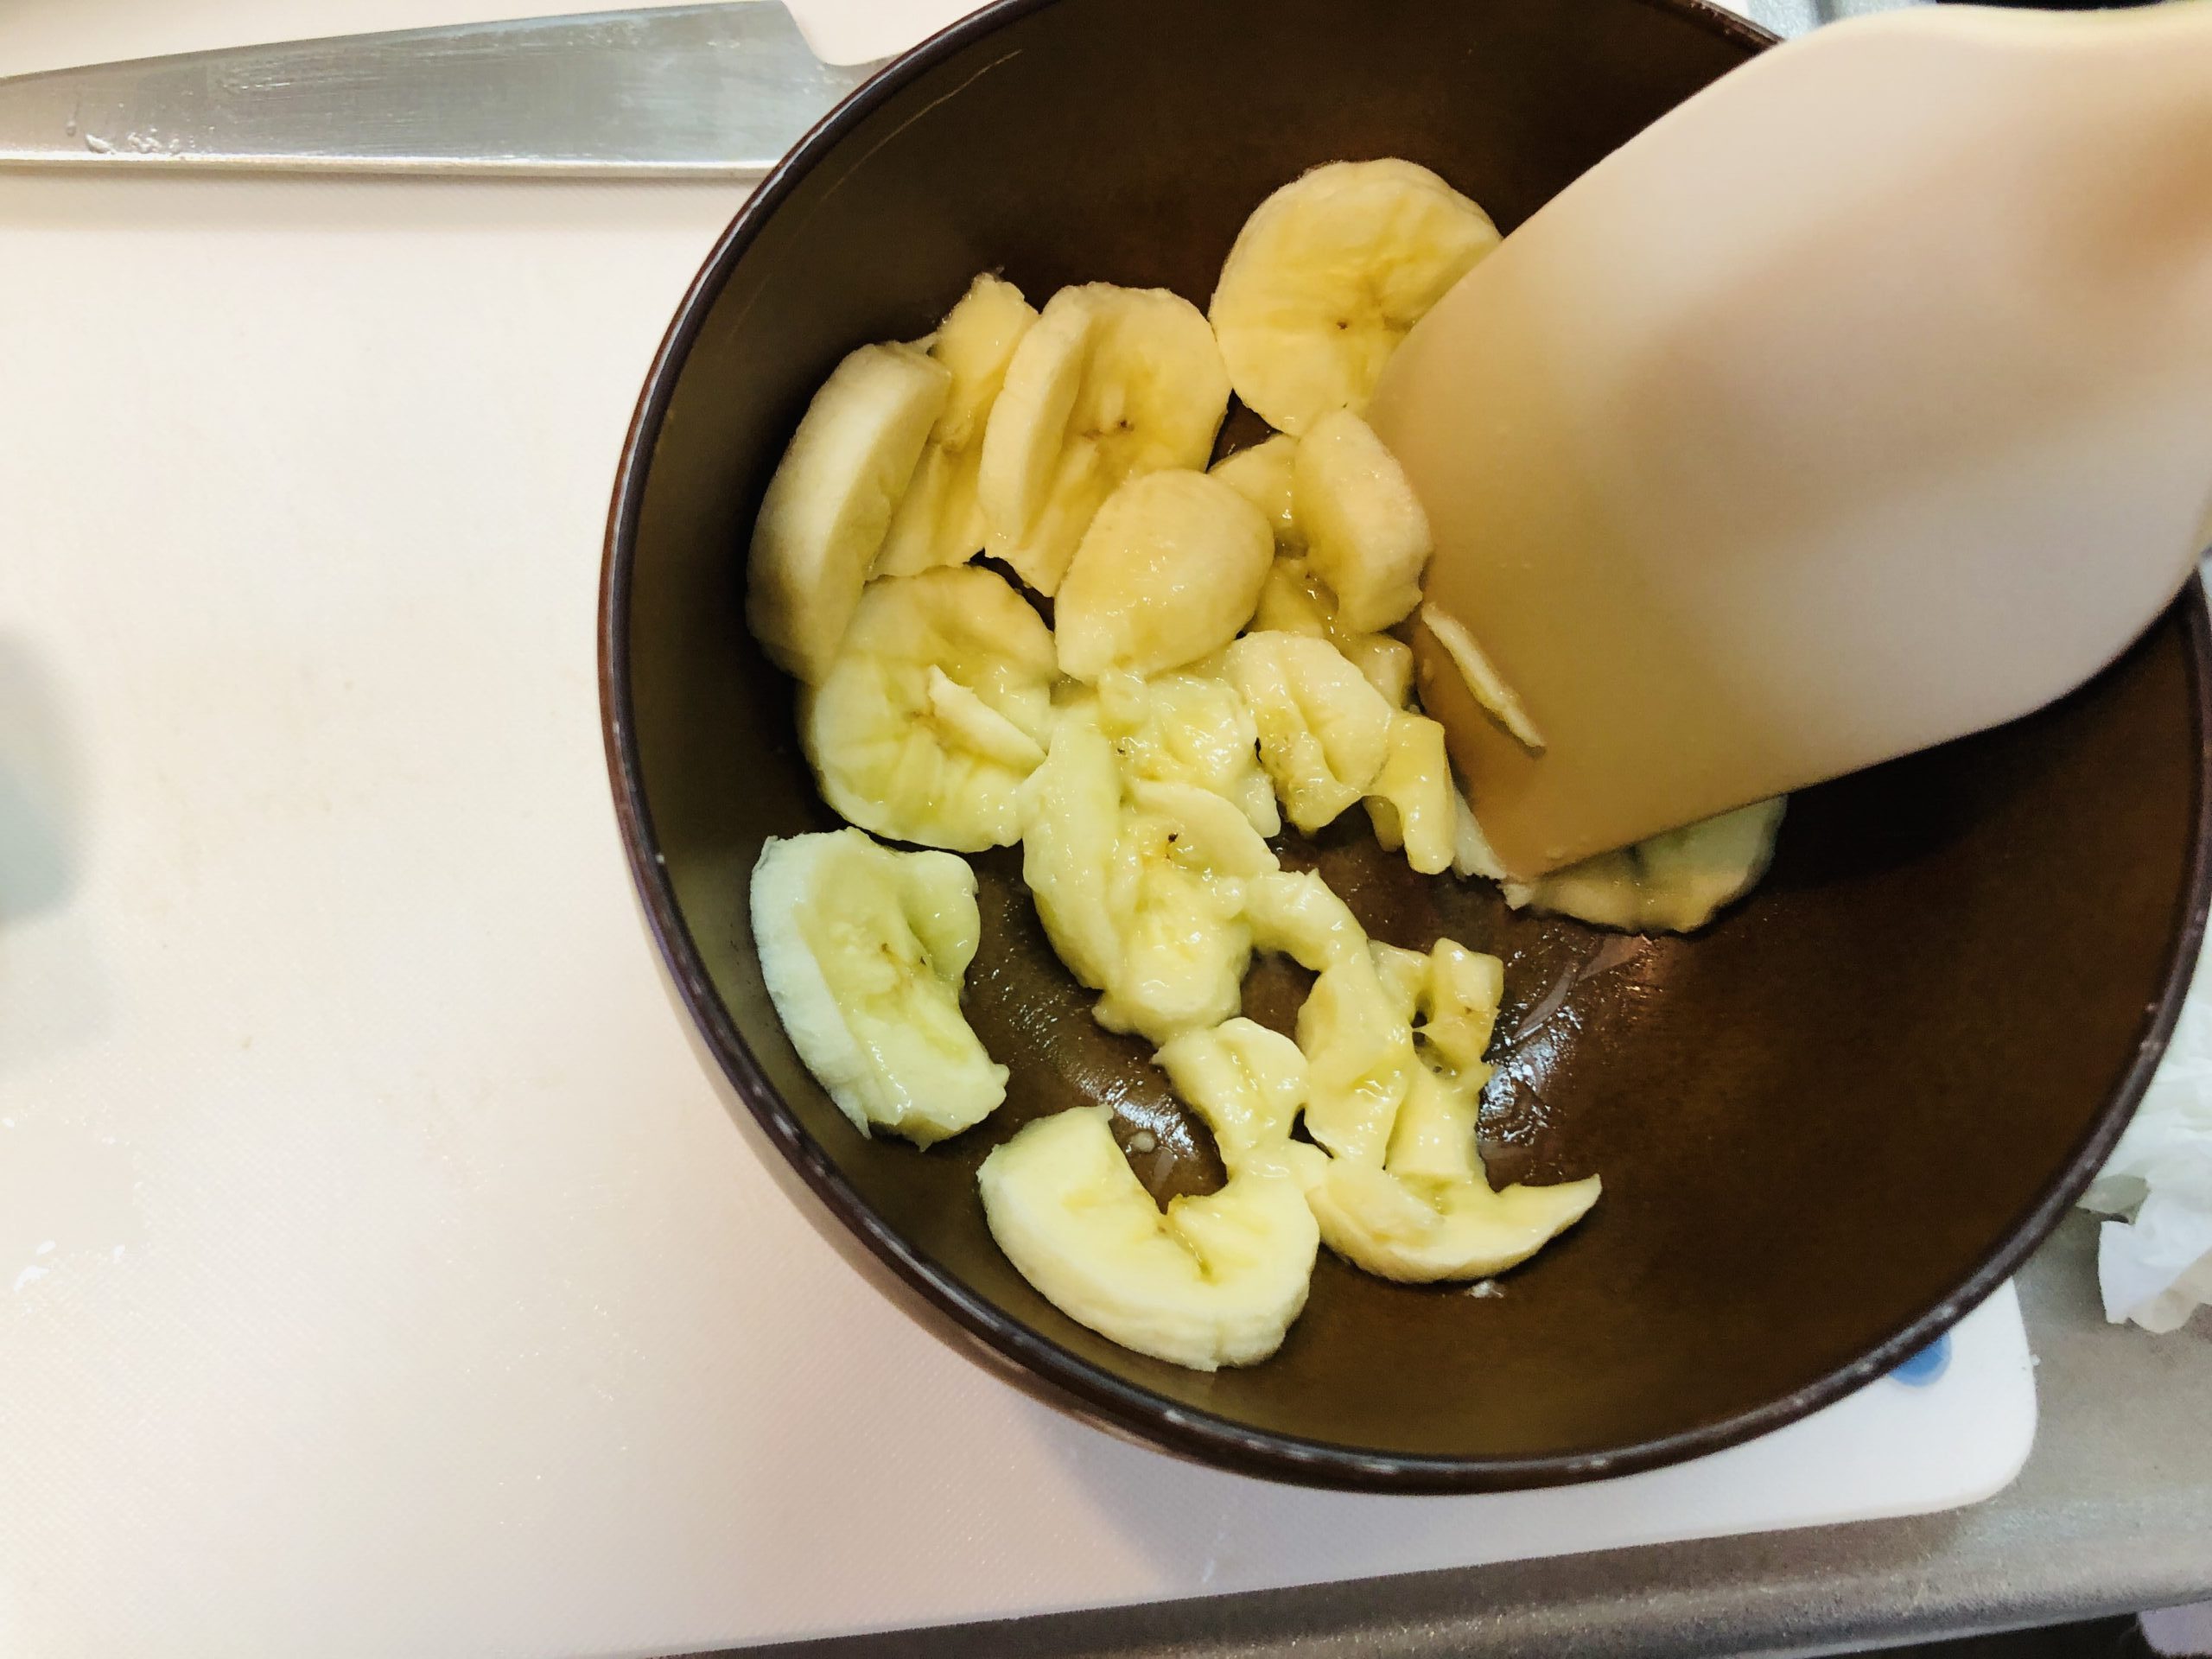 器の中でスライスしたバナナをゴムベラで潰している様子の画像です